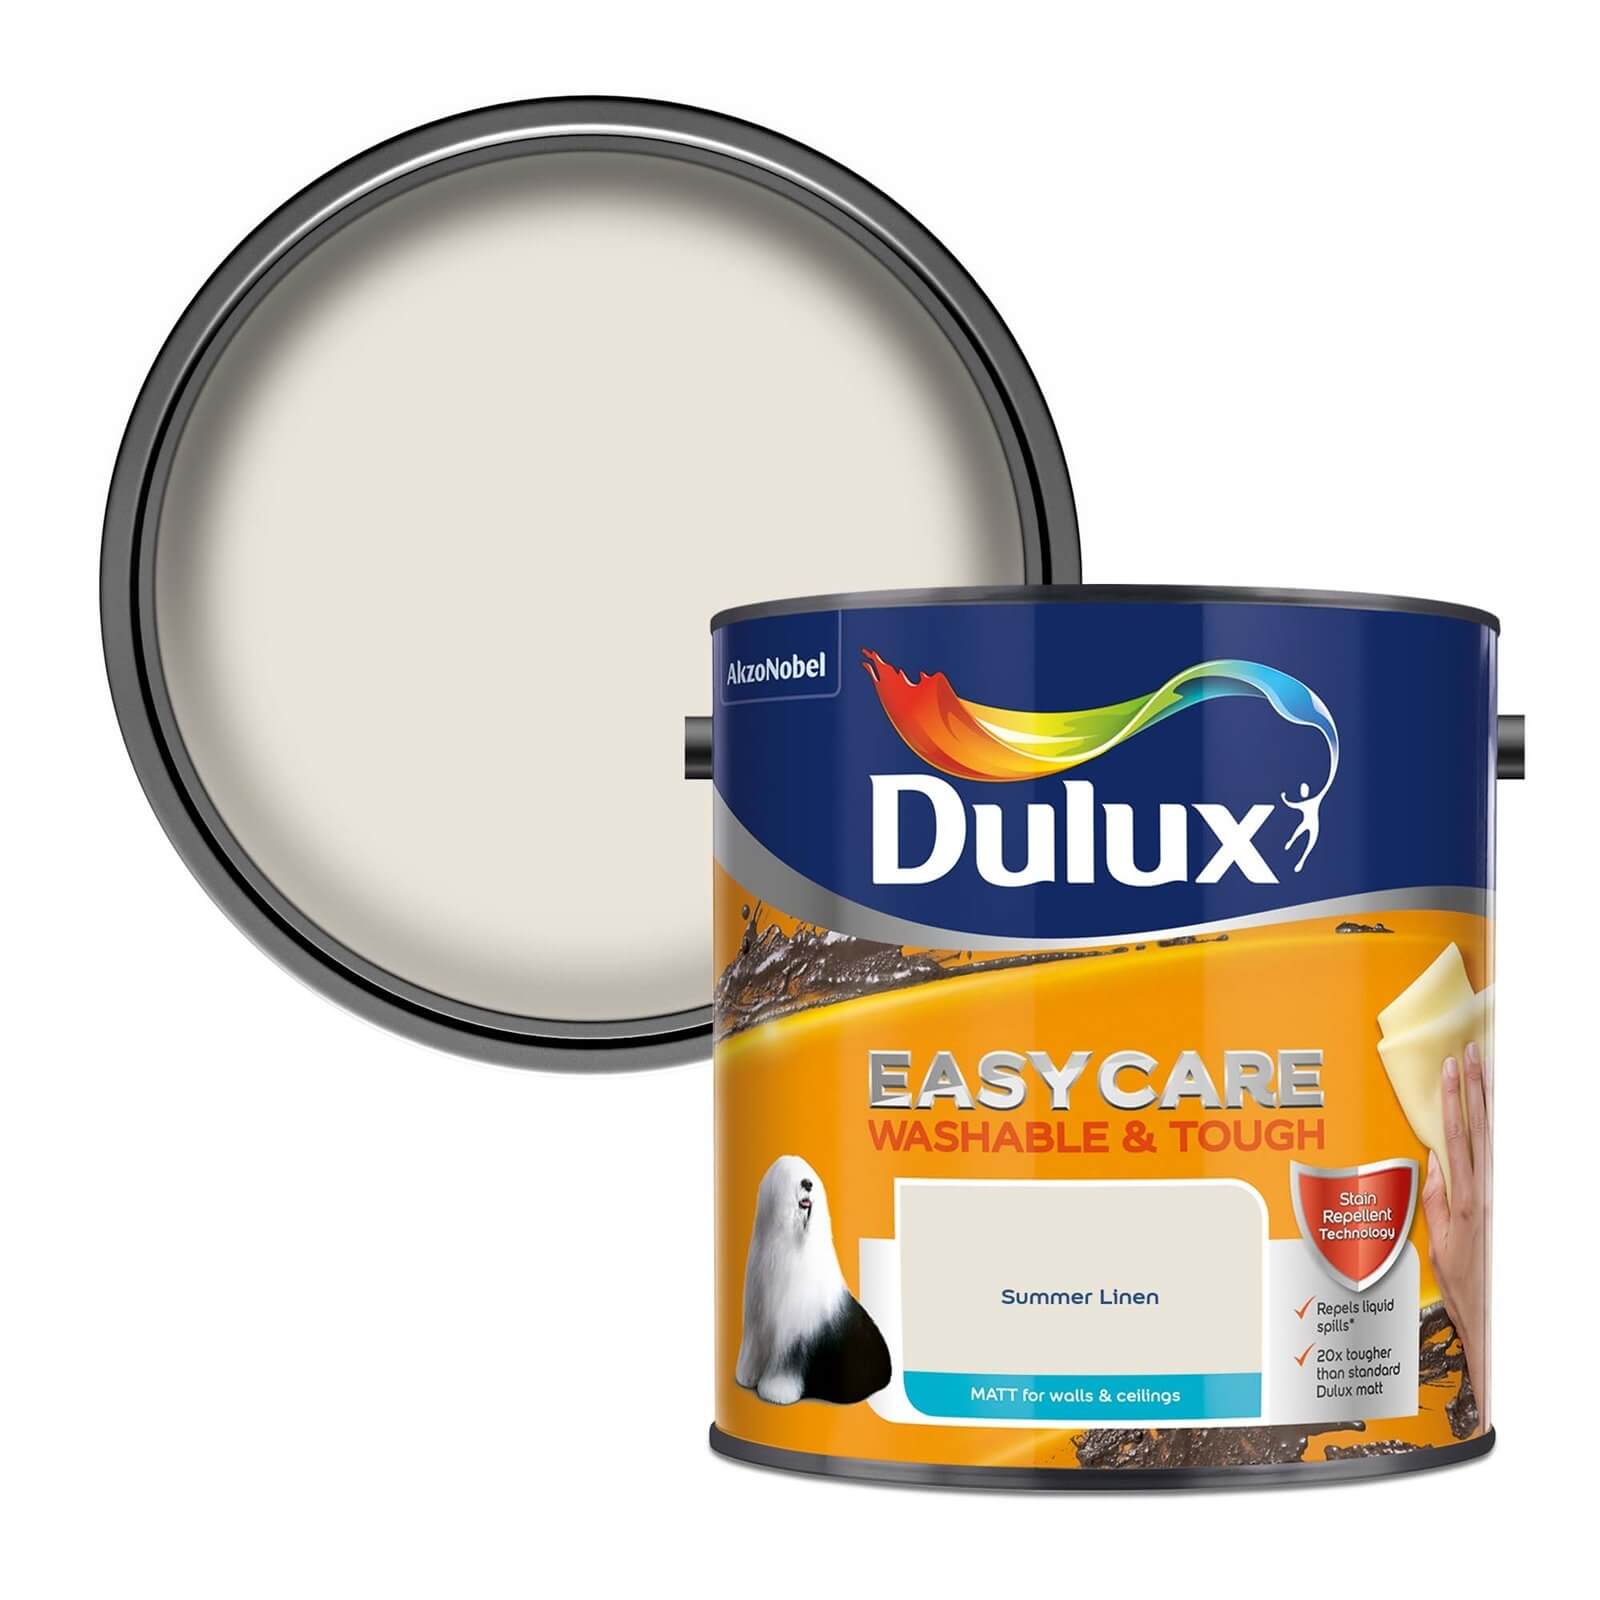 Dulux Easycare Washable & Tough Matt Paint Summer Linen - 2.5L